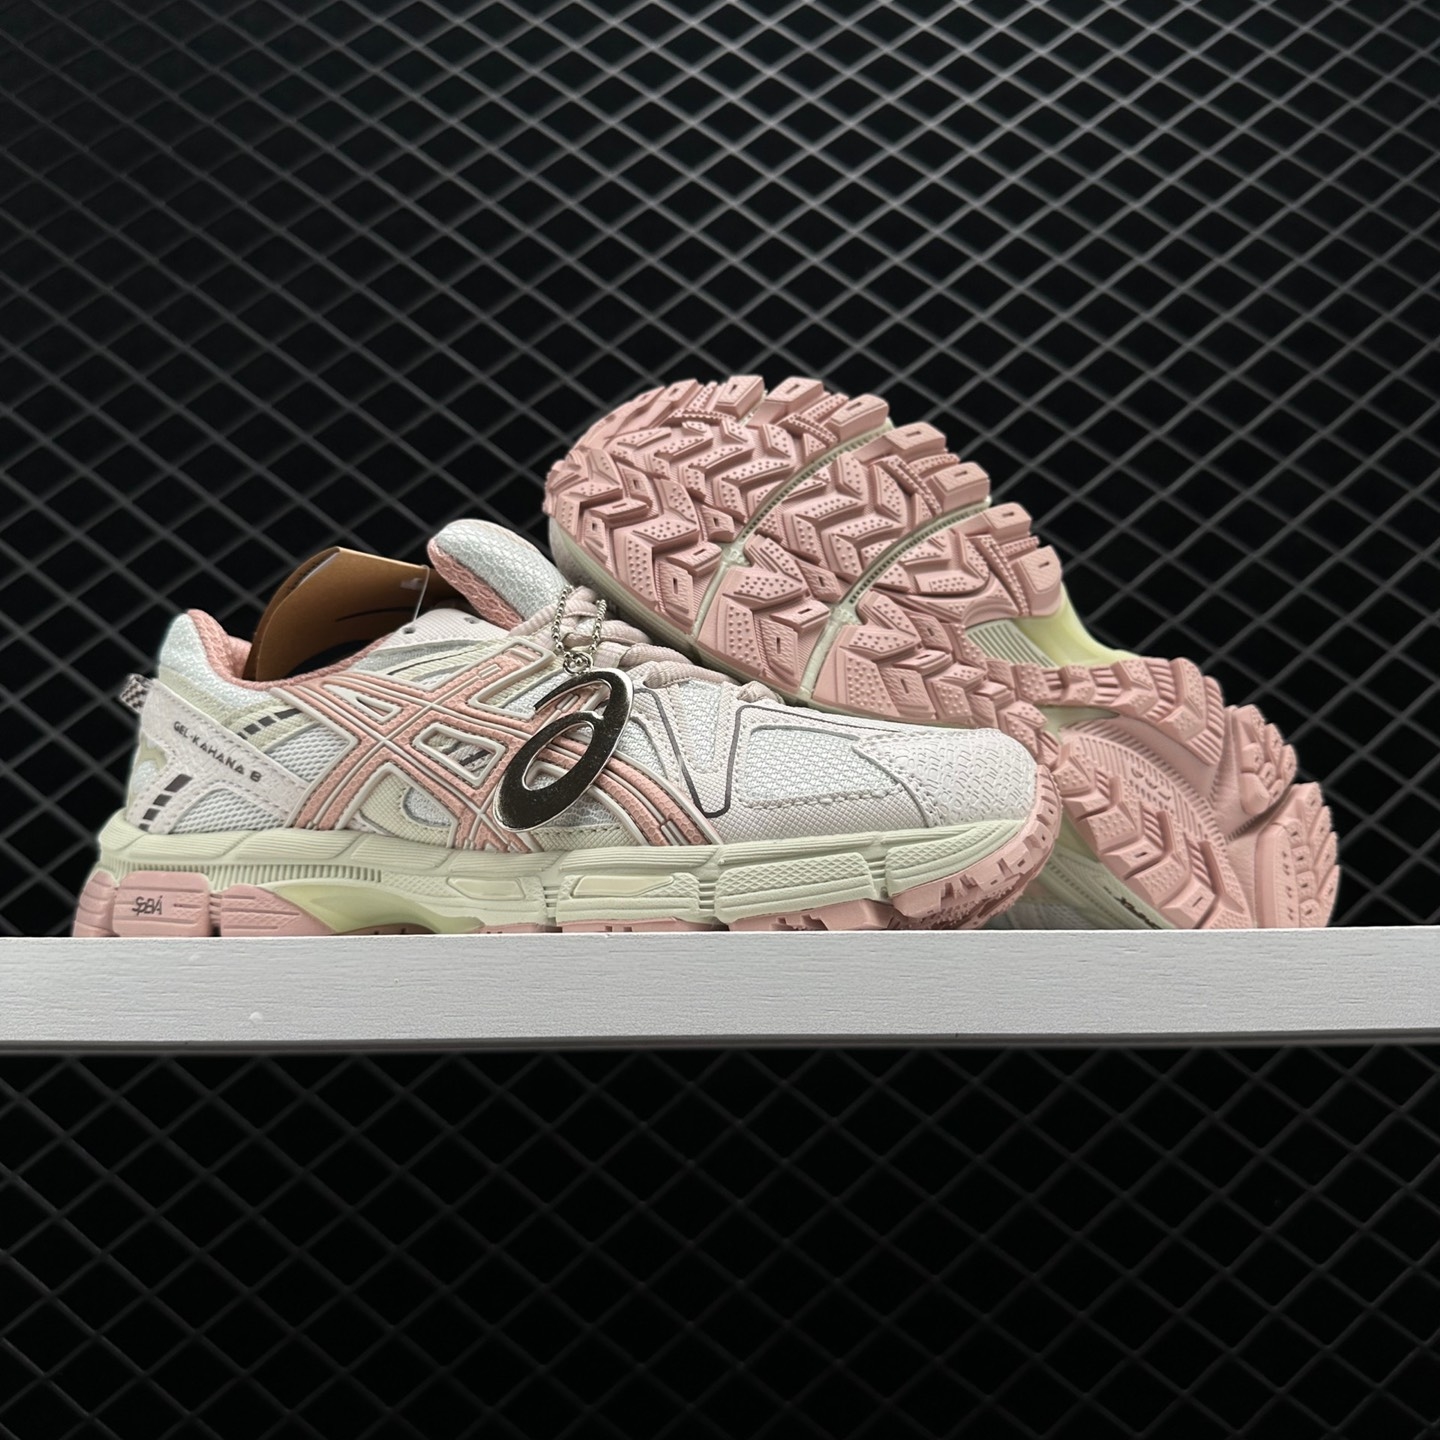 Asics Gel-Kahana 8 White Pink: Durable Running Shoes for Women